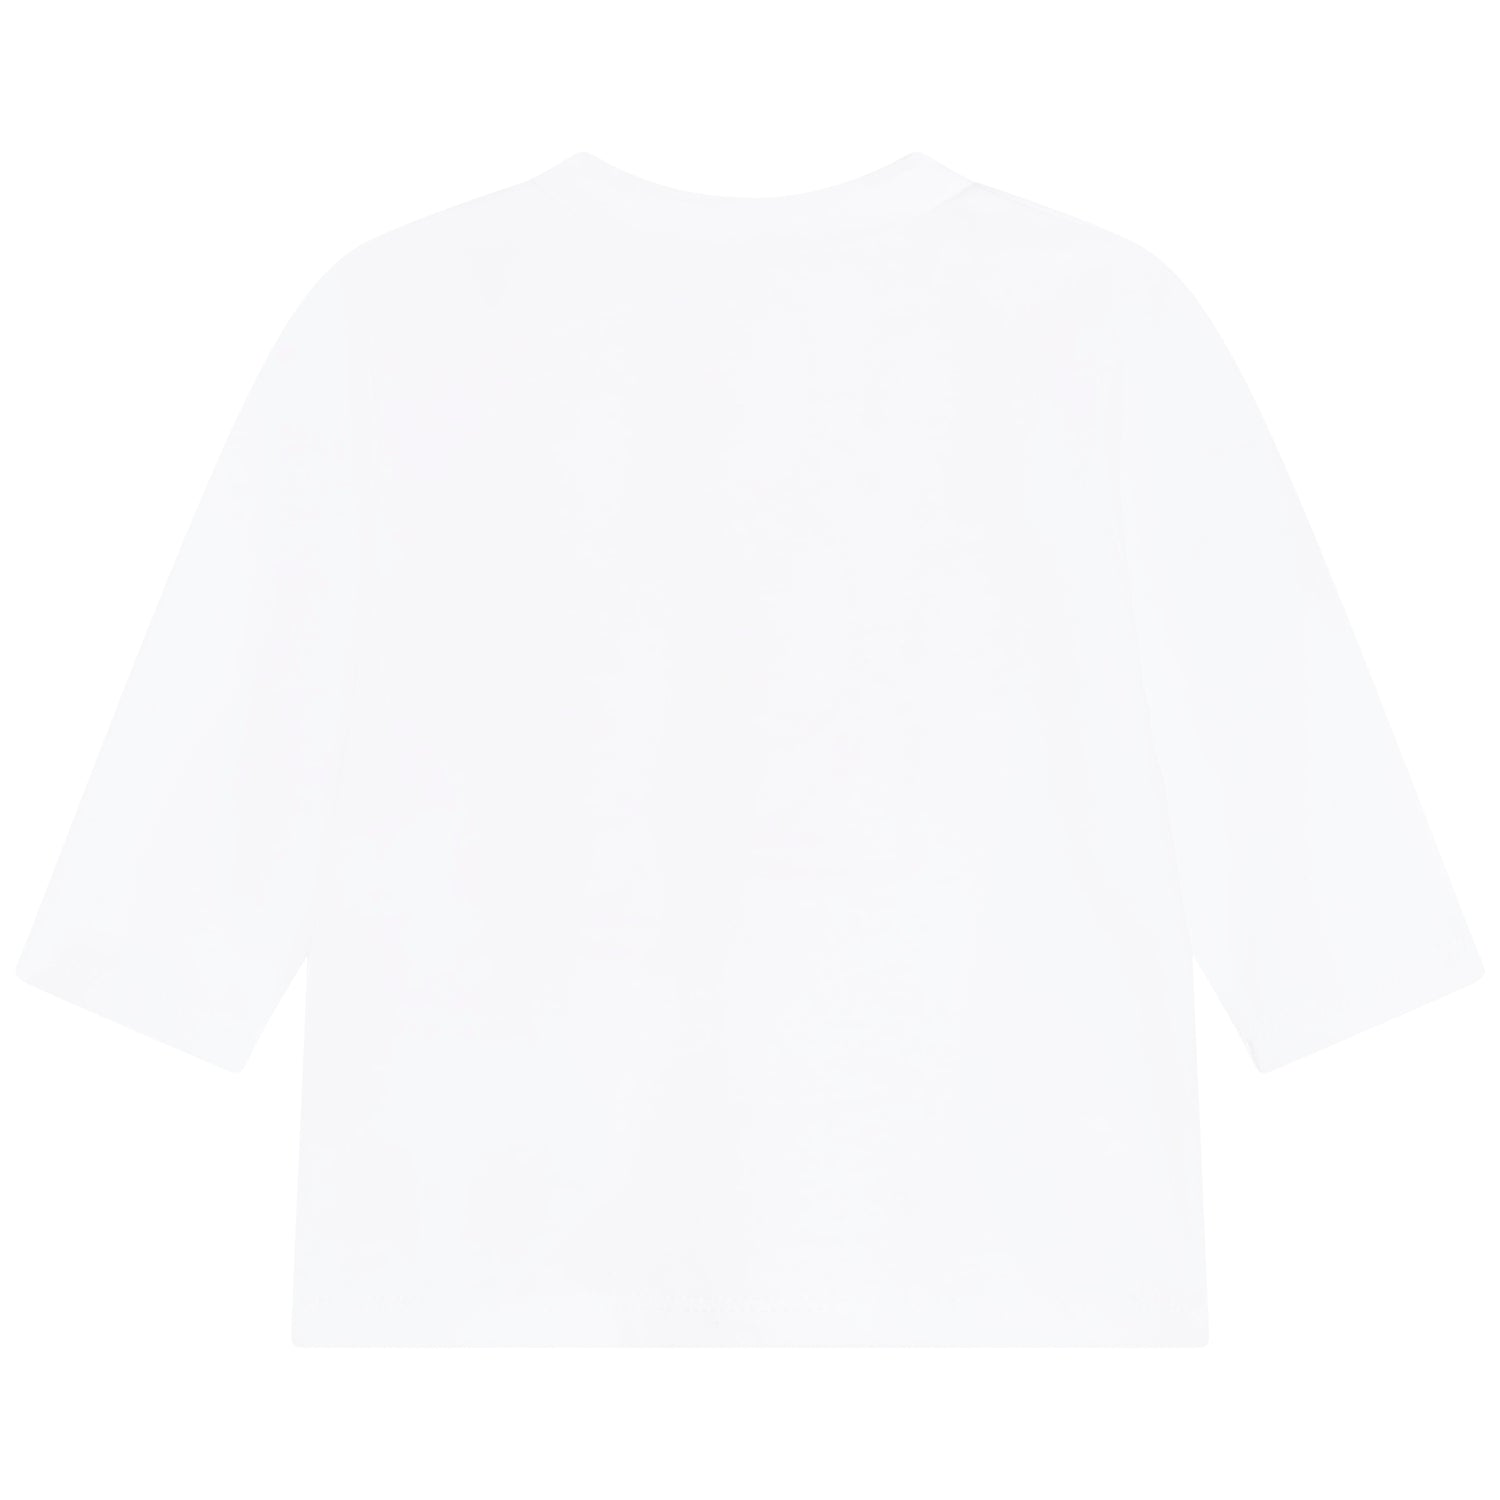 Karl Lagerfeld Kids T-Shirt + Pant Set Style: Z98118